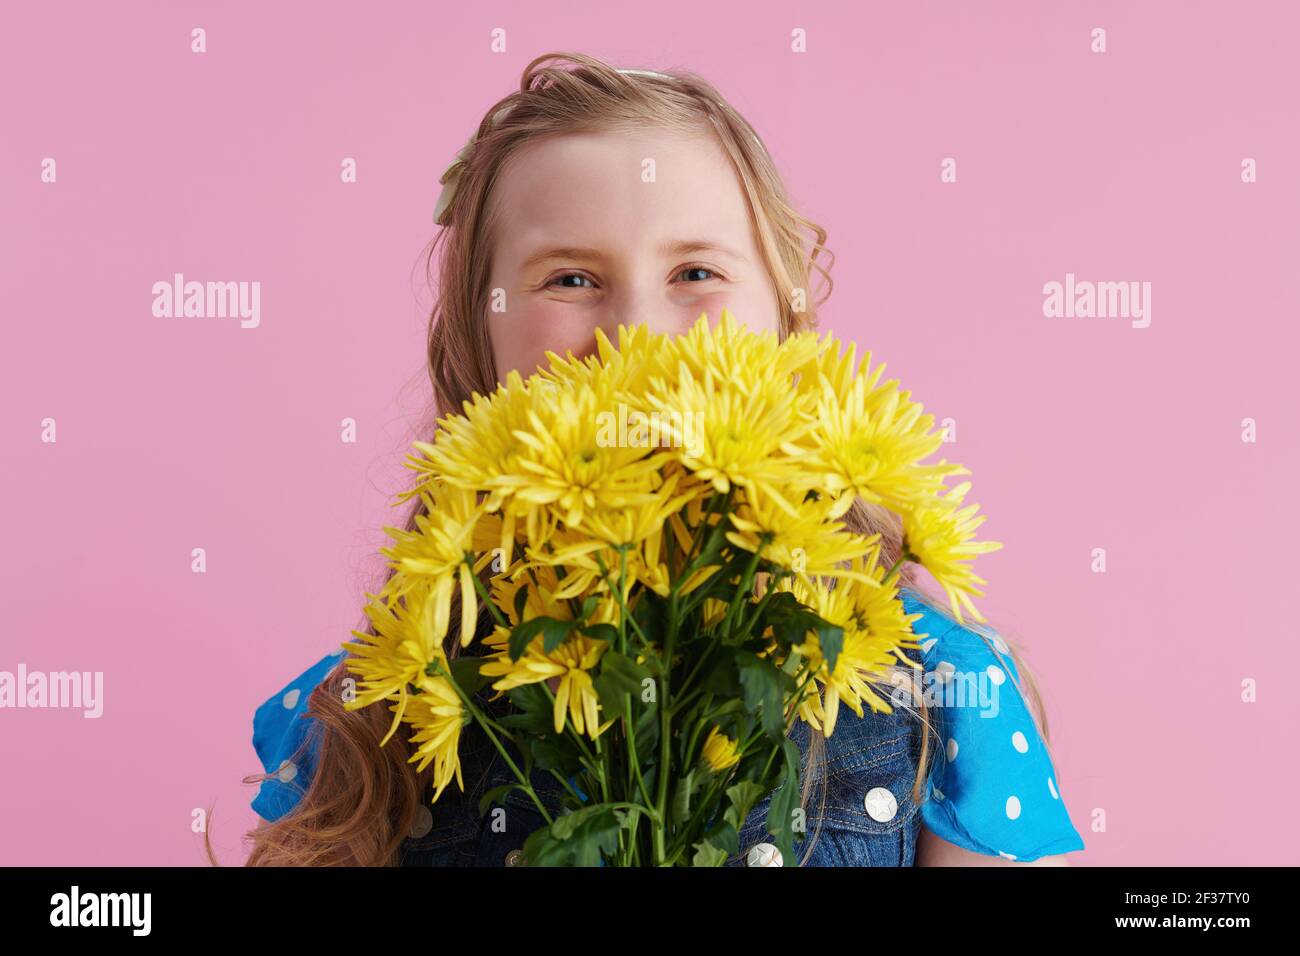 Happy stylish Mädchen in gepunkteten blau insgesamt mit gelben Chrysanthemen Blumen isoliert auf rosa Hintergrund. Stockfoto